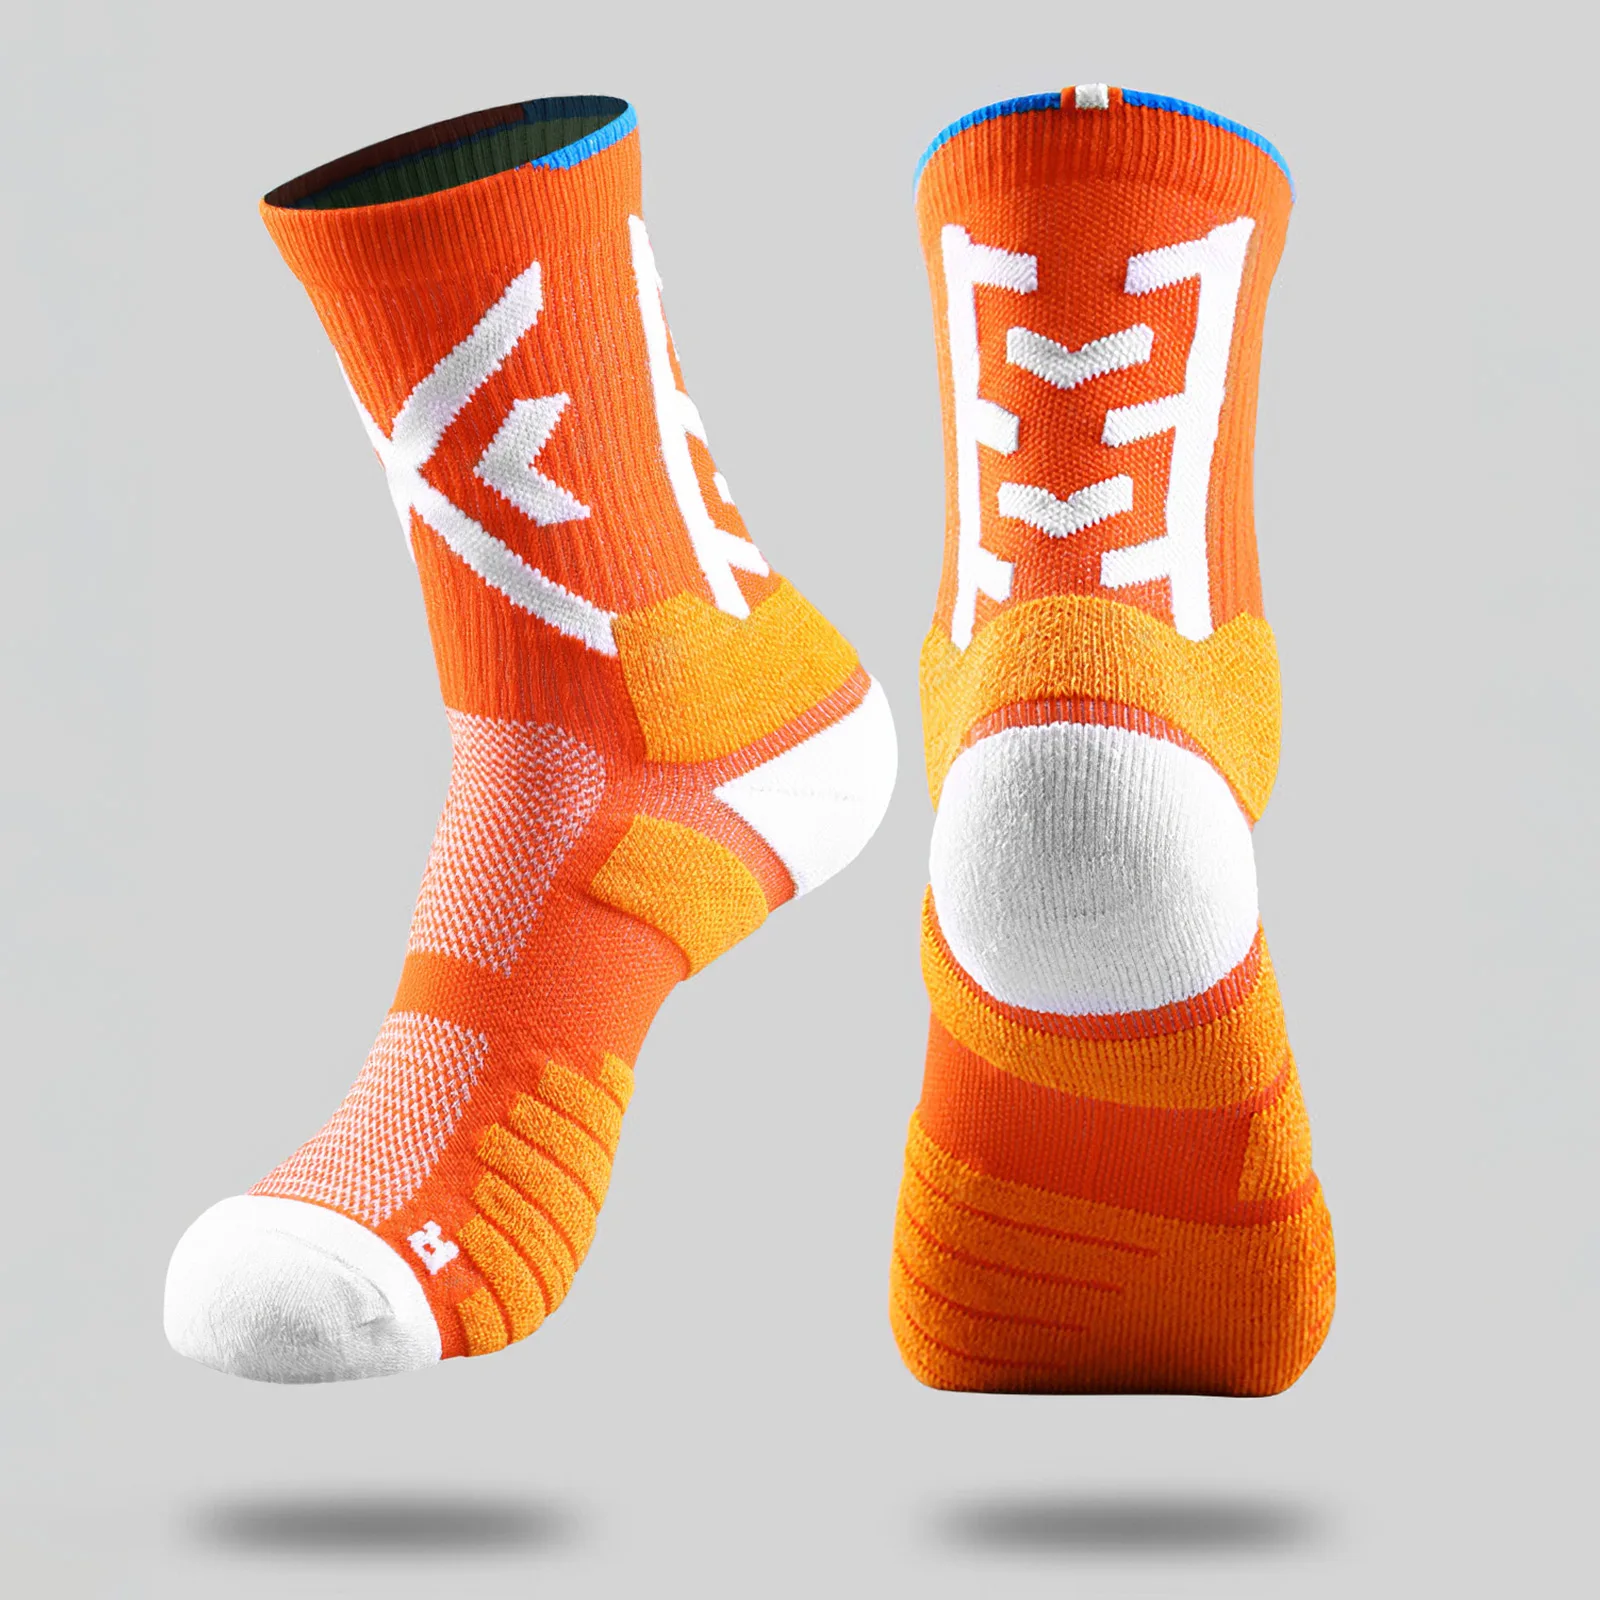 

Профессиональные спортивные Элитные баскетбольные носки мужские уличные дышащие махровые полотенца ударопрочные носки для бега 4 пары